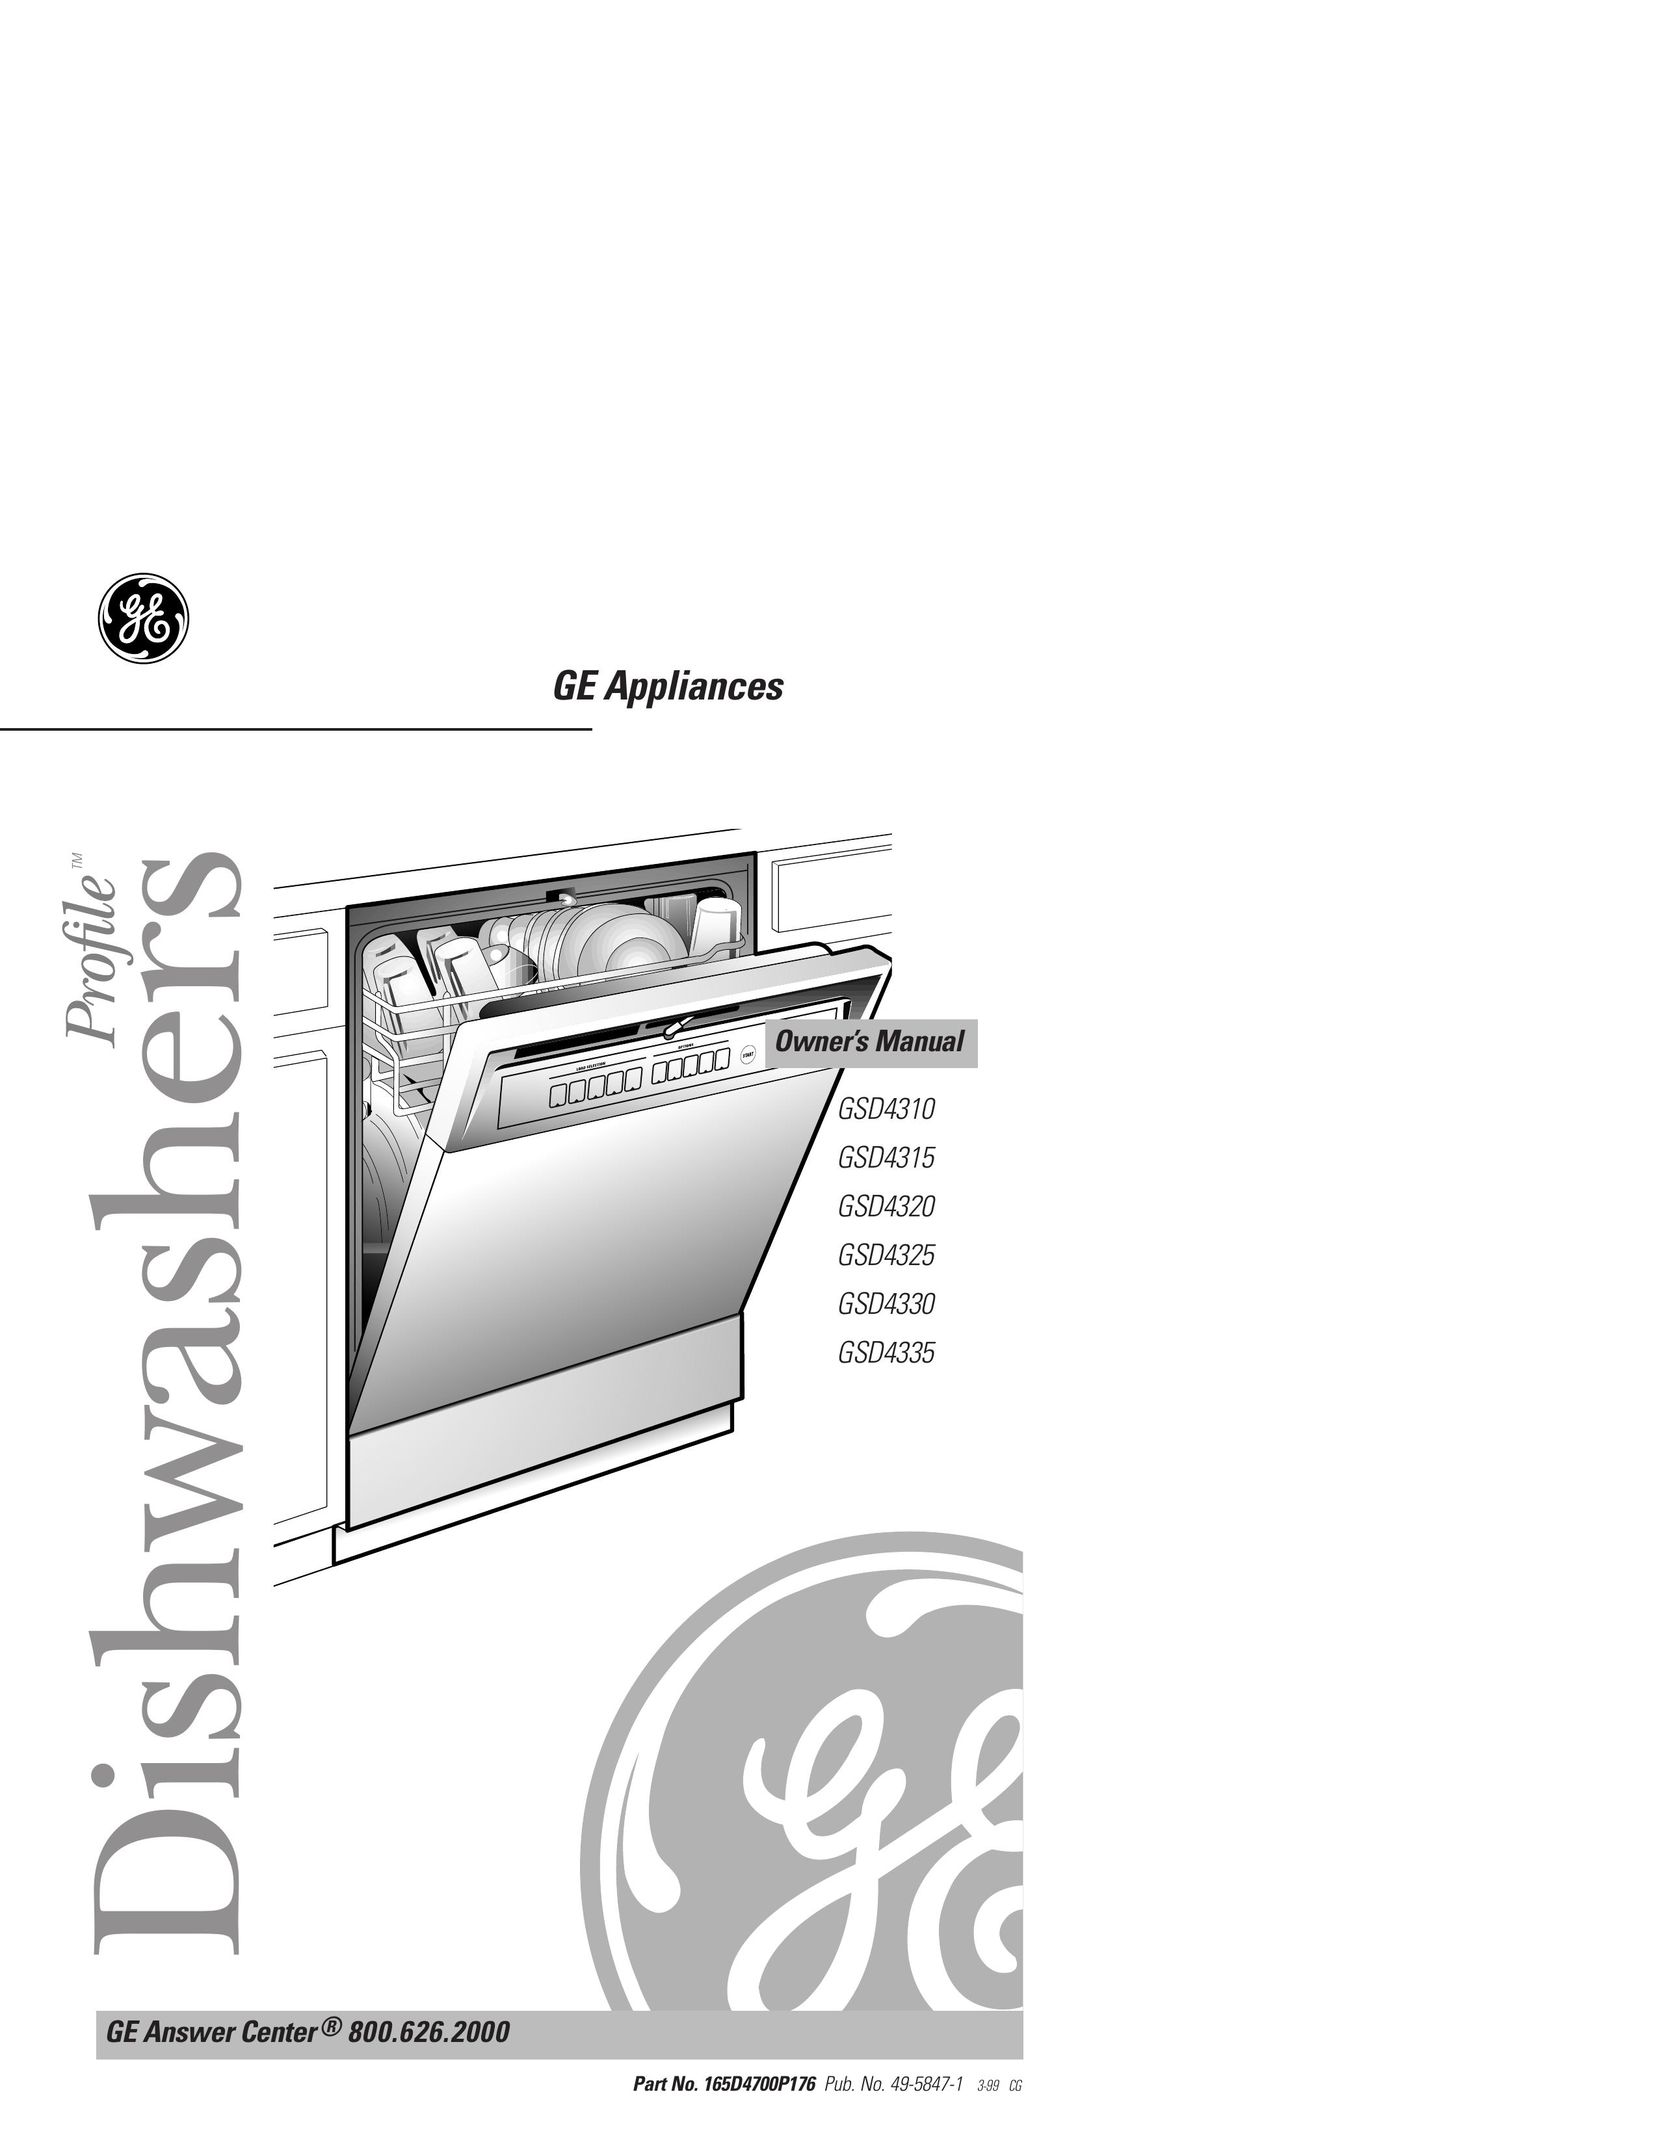 GE 49-5847-1 Dishwasher User Manual